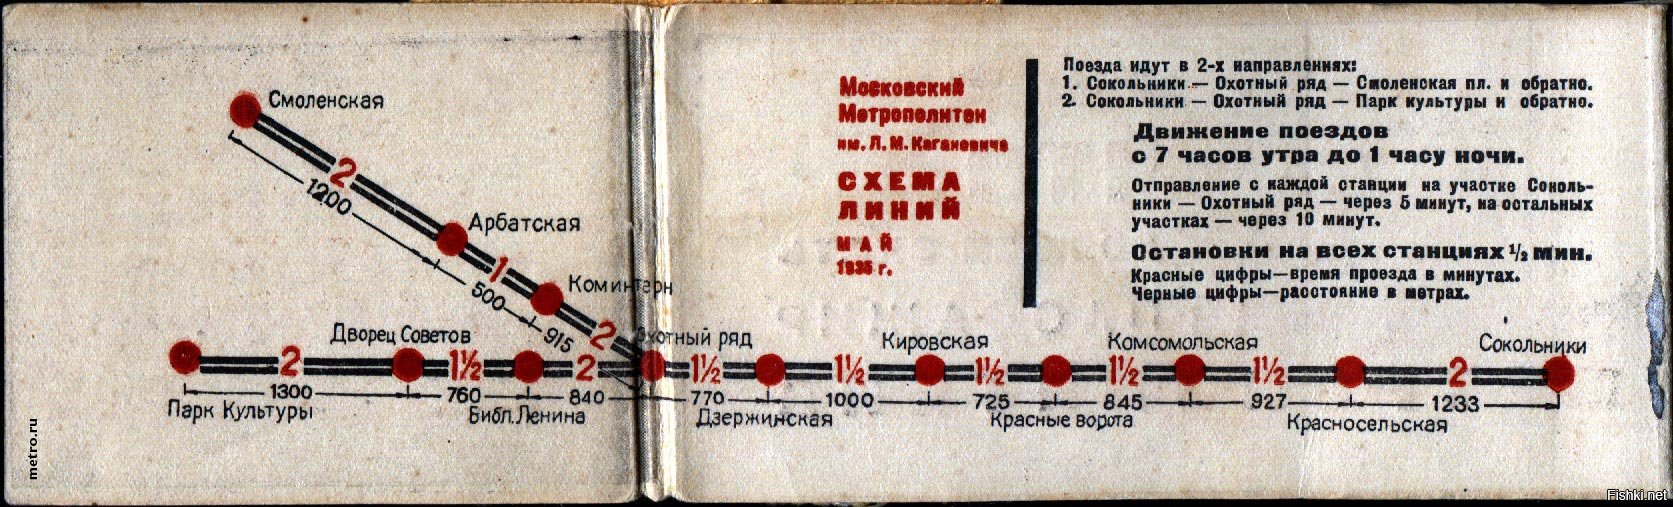 Московский метрополитен схема 1935